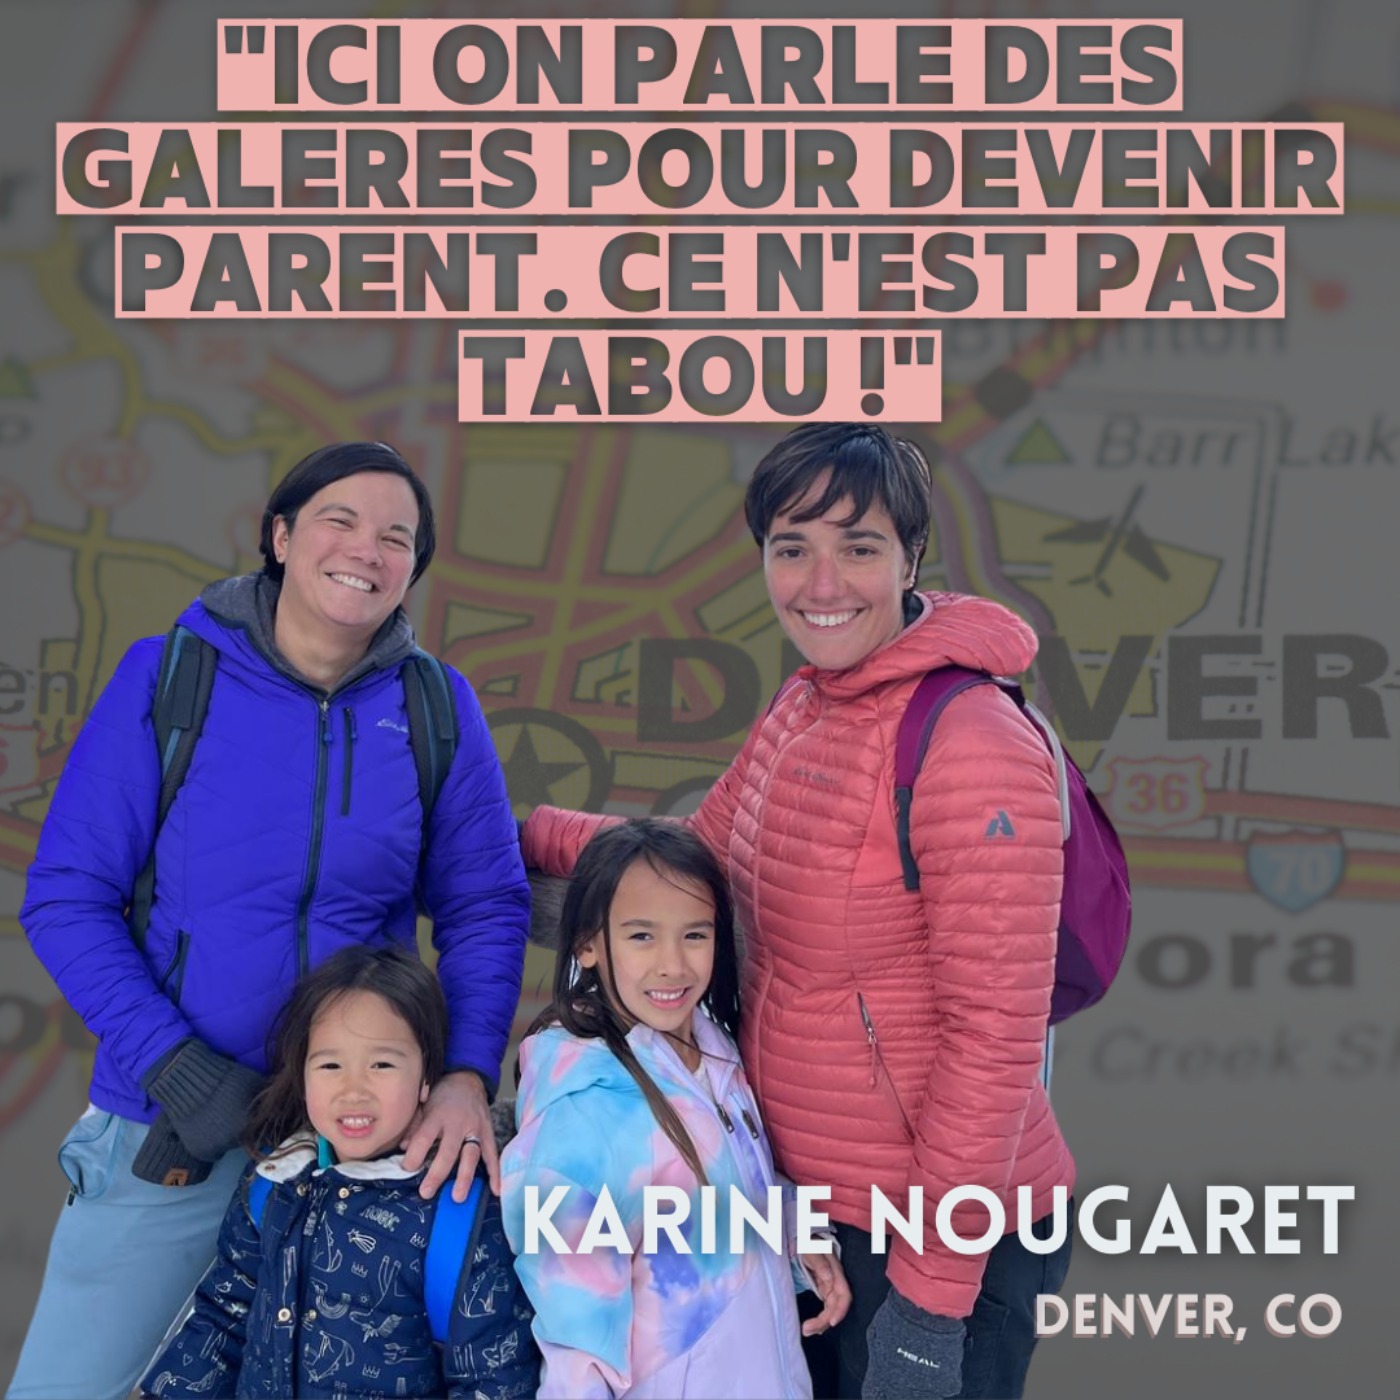 Karine Nougaret : ”Ici on parle des galères pour devenir parent. Ce n’est pas tabou !”